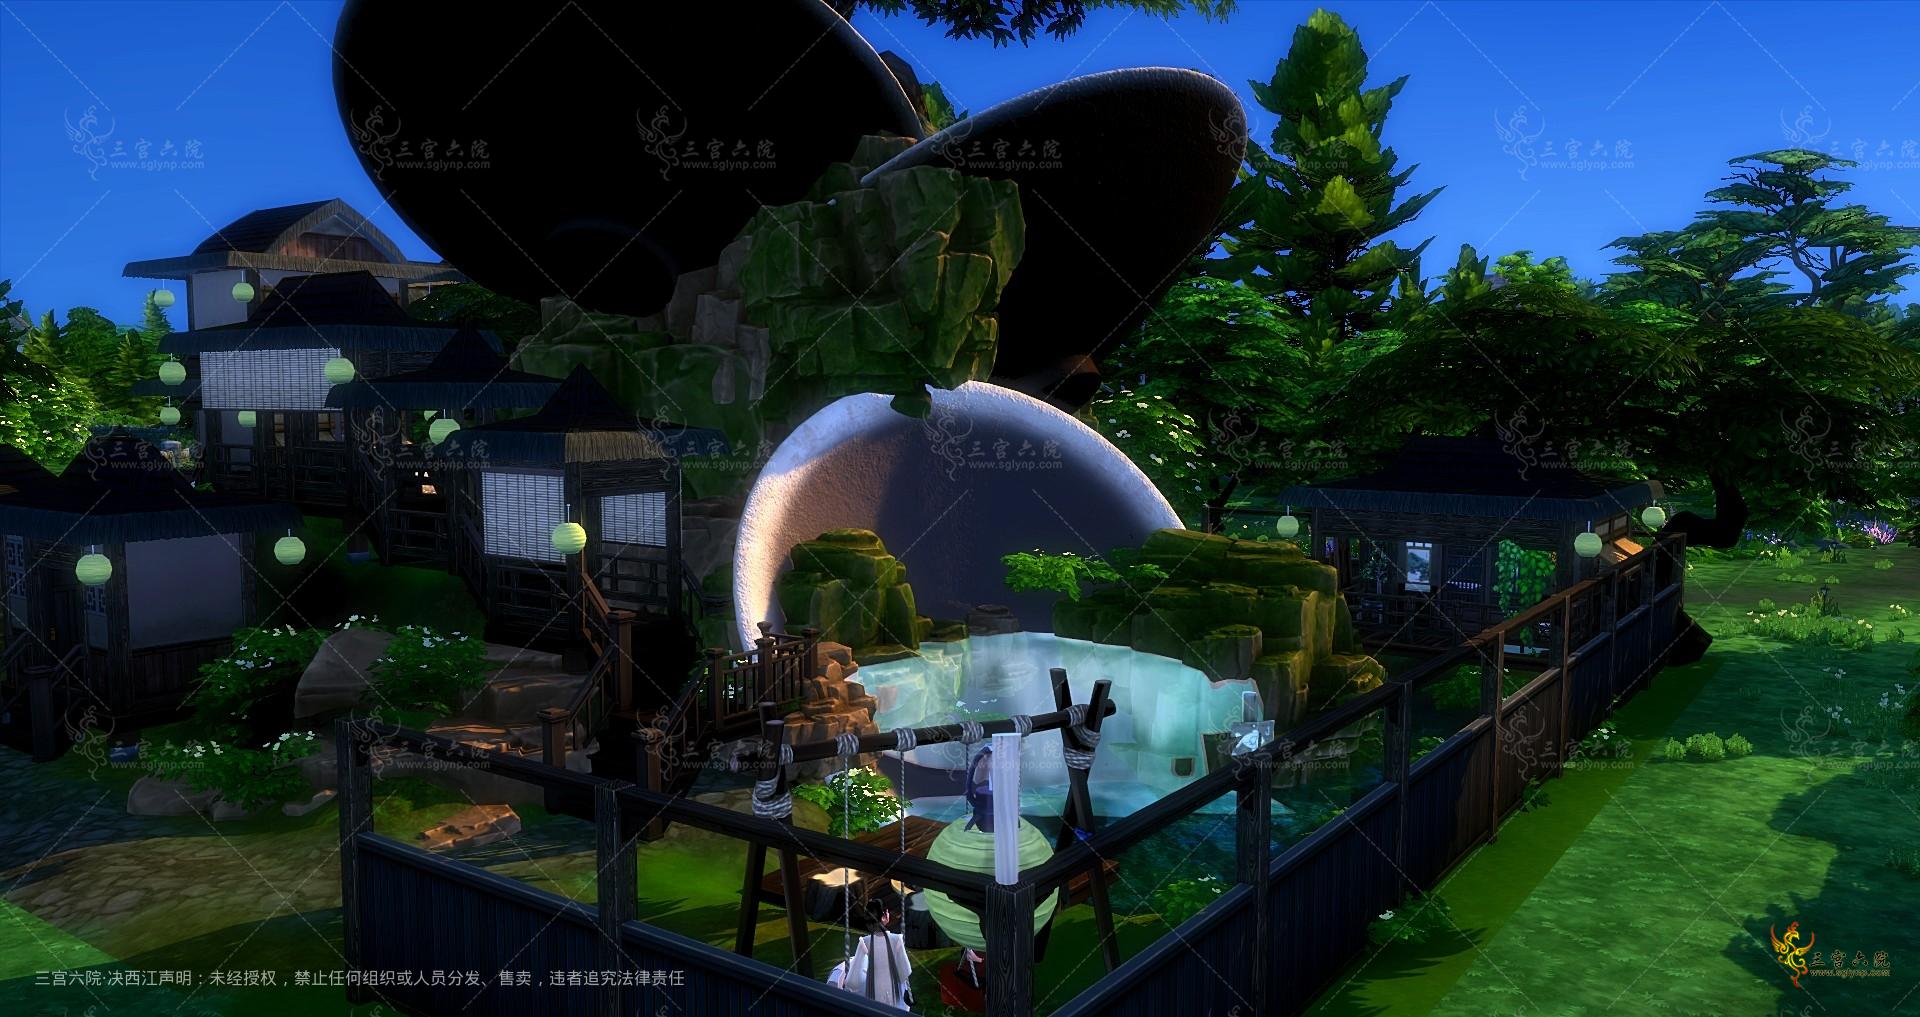 Sims 4 Screenshot 2022.07.29 - 00.11.40.96.png